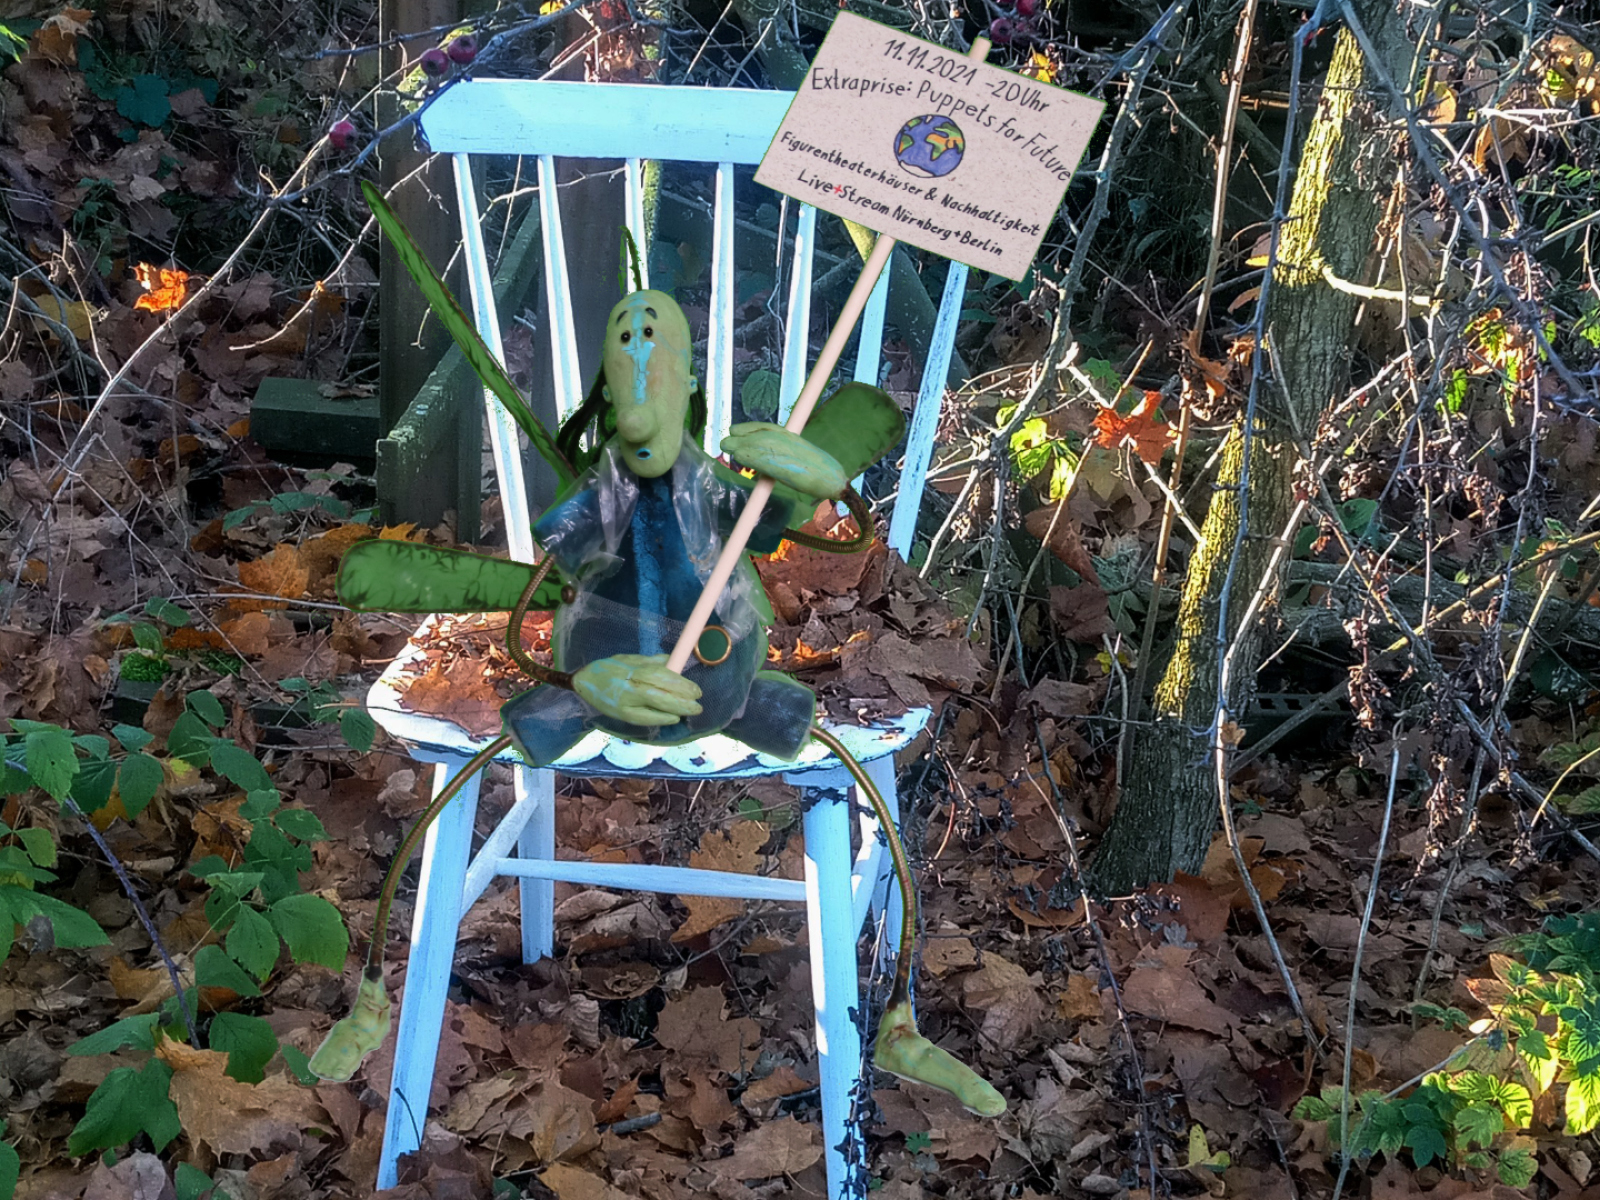 Stuhl mit einer kleinen grünen Puppe, die ein Protestschild hochhält